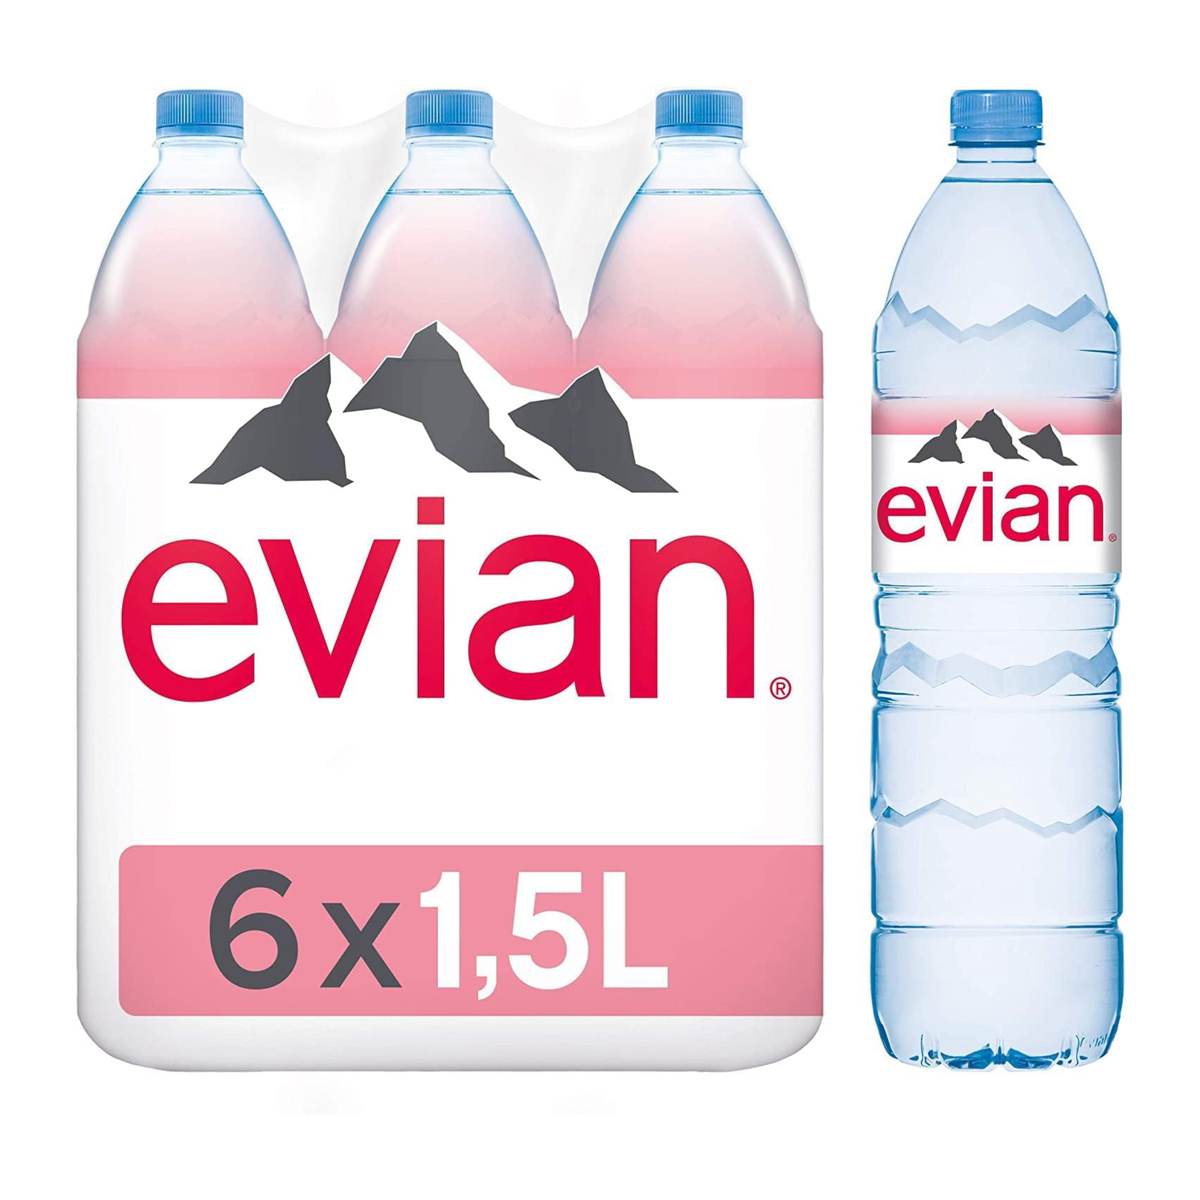 إيفيان مياه معدنية طبيعية 1.5 لتر